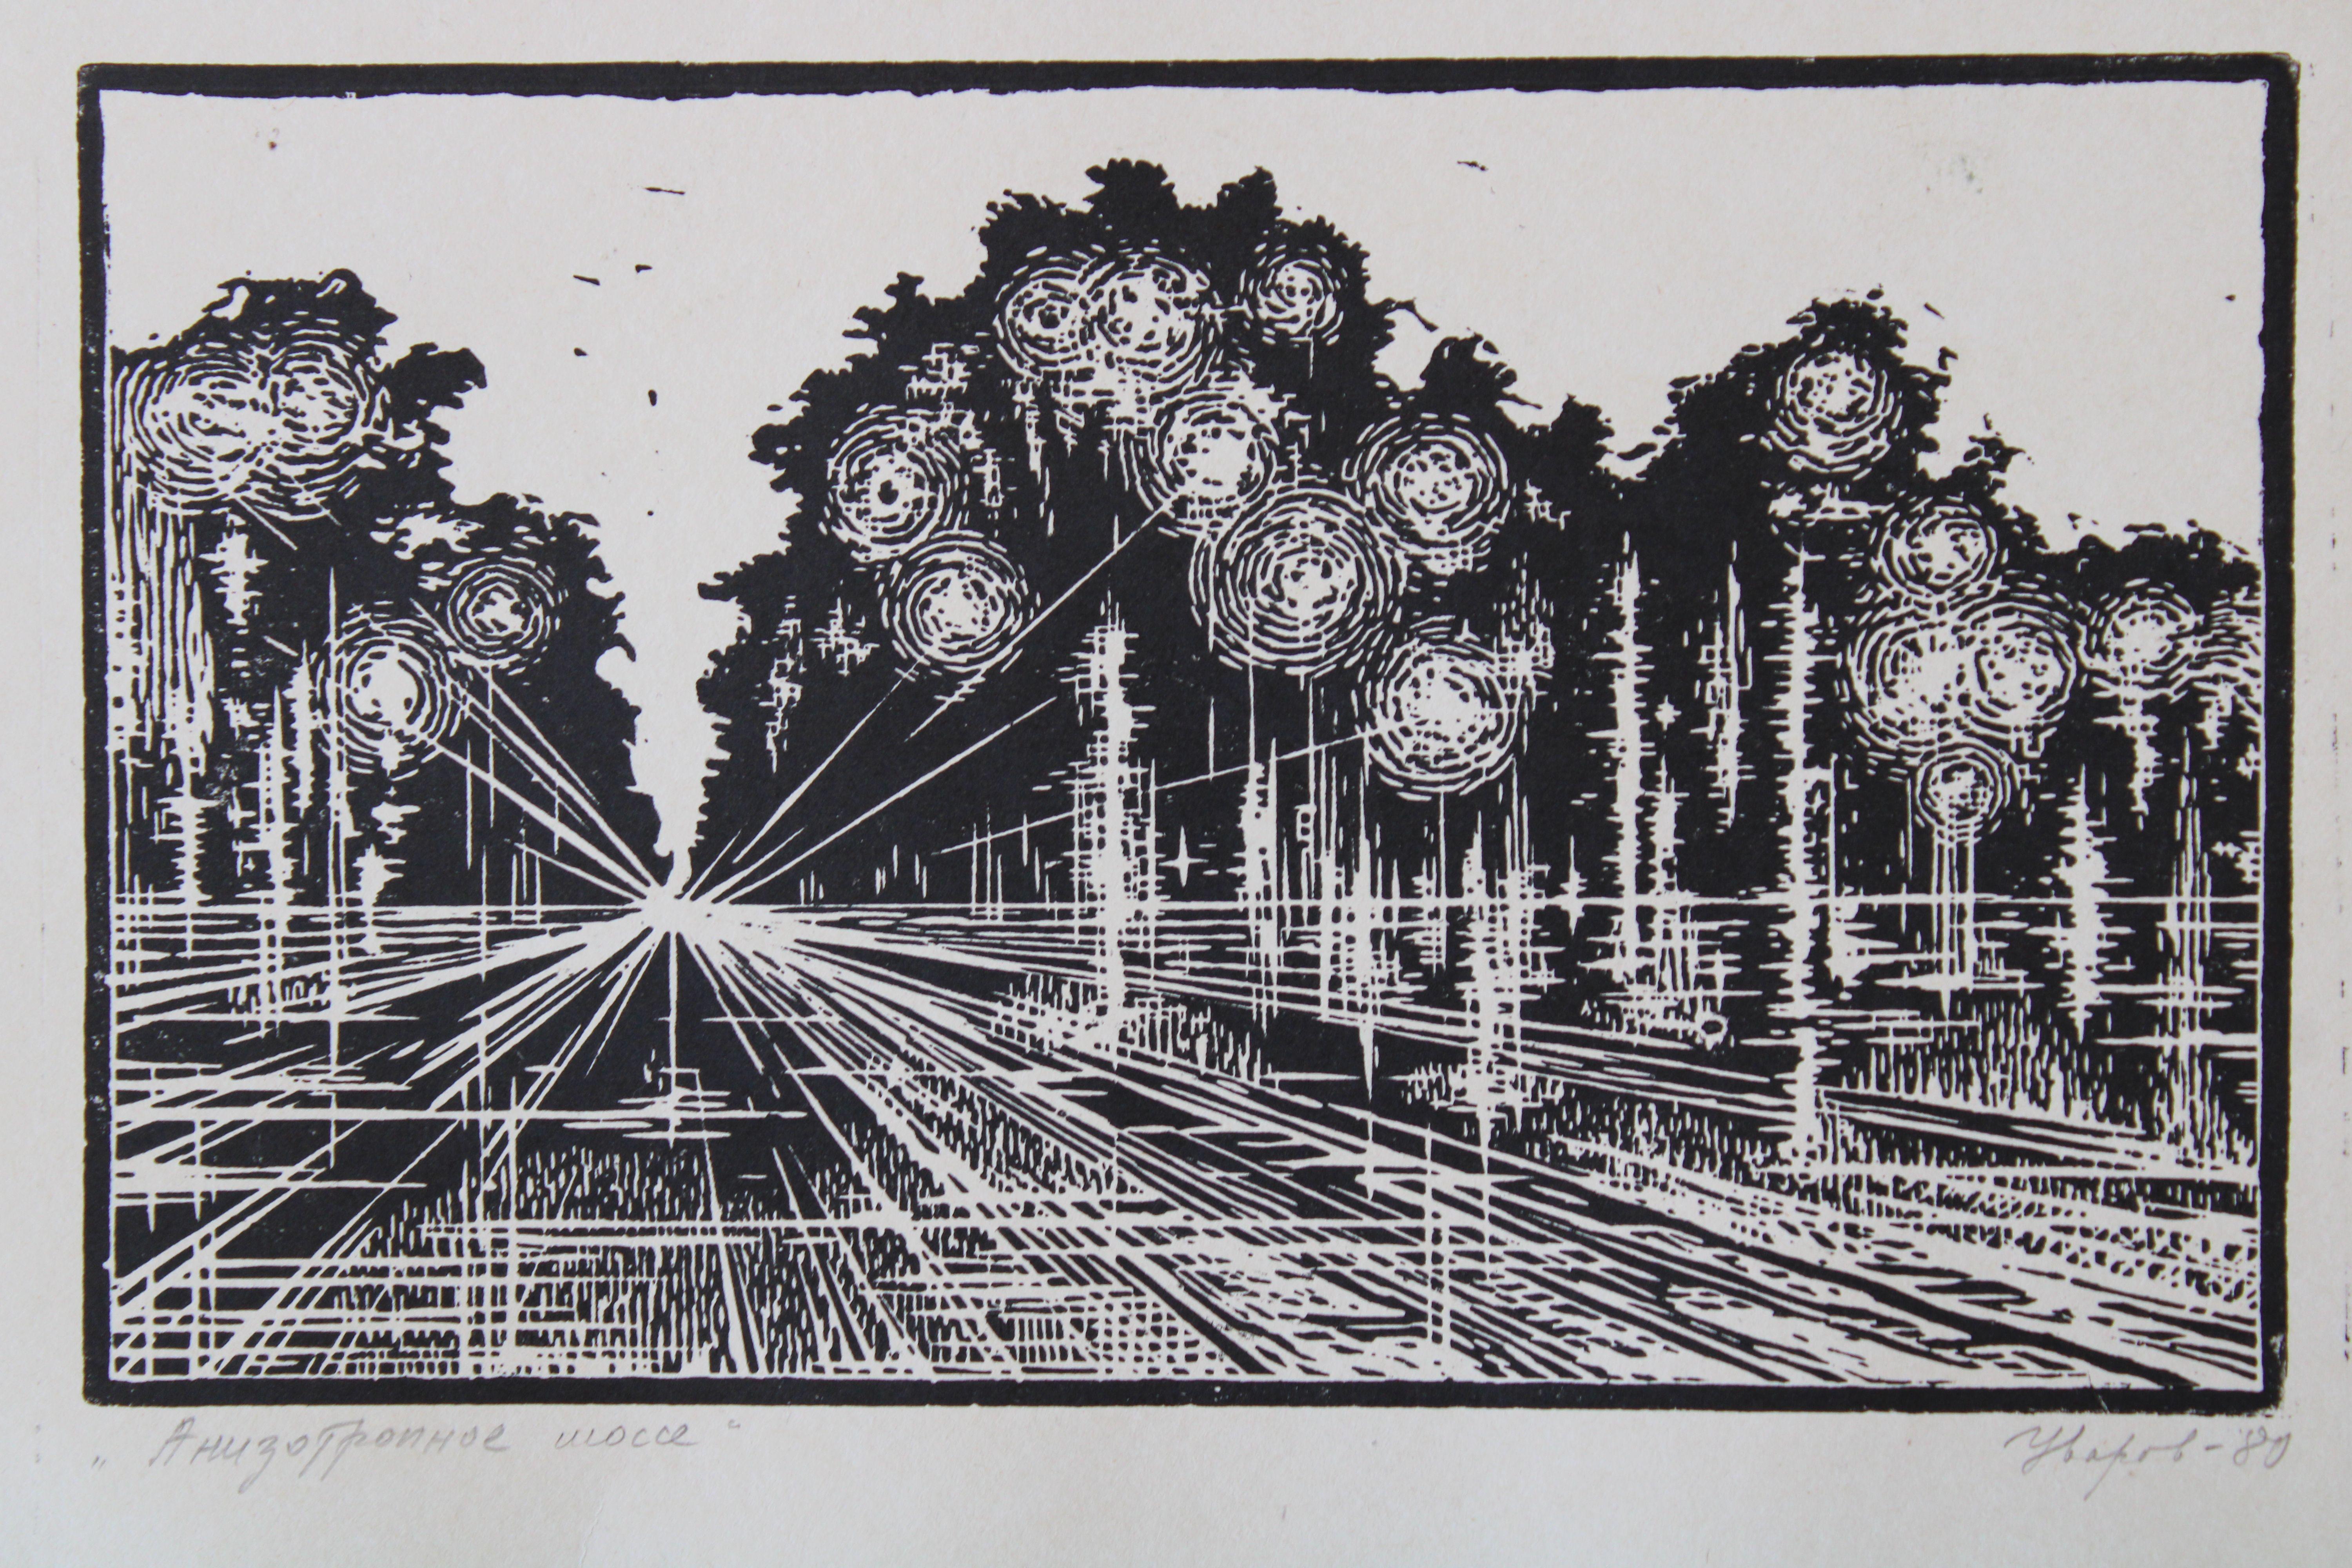 Autoroute anozotrope

1980, papier, linogravure, 15,5x25 cm

L'œuvre d'art représente une autoroute ou une route qui prend une forme surréaliste et abstraite. Le terme 